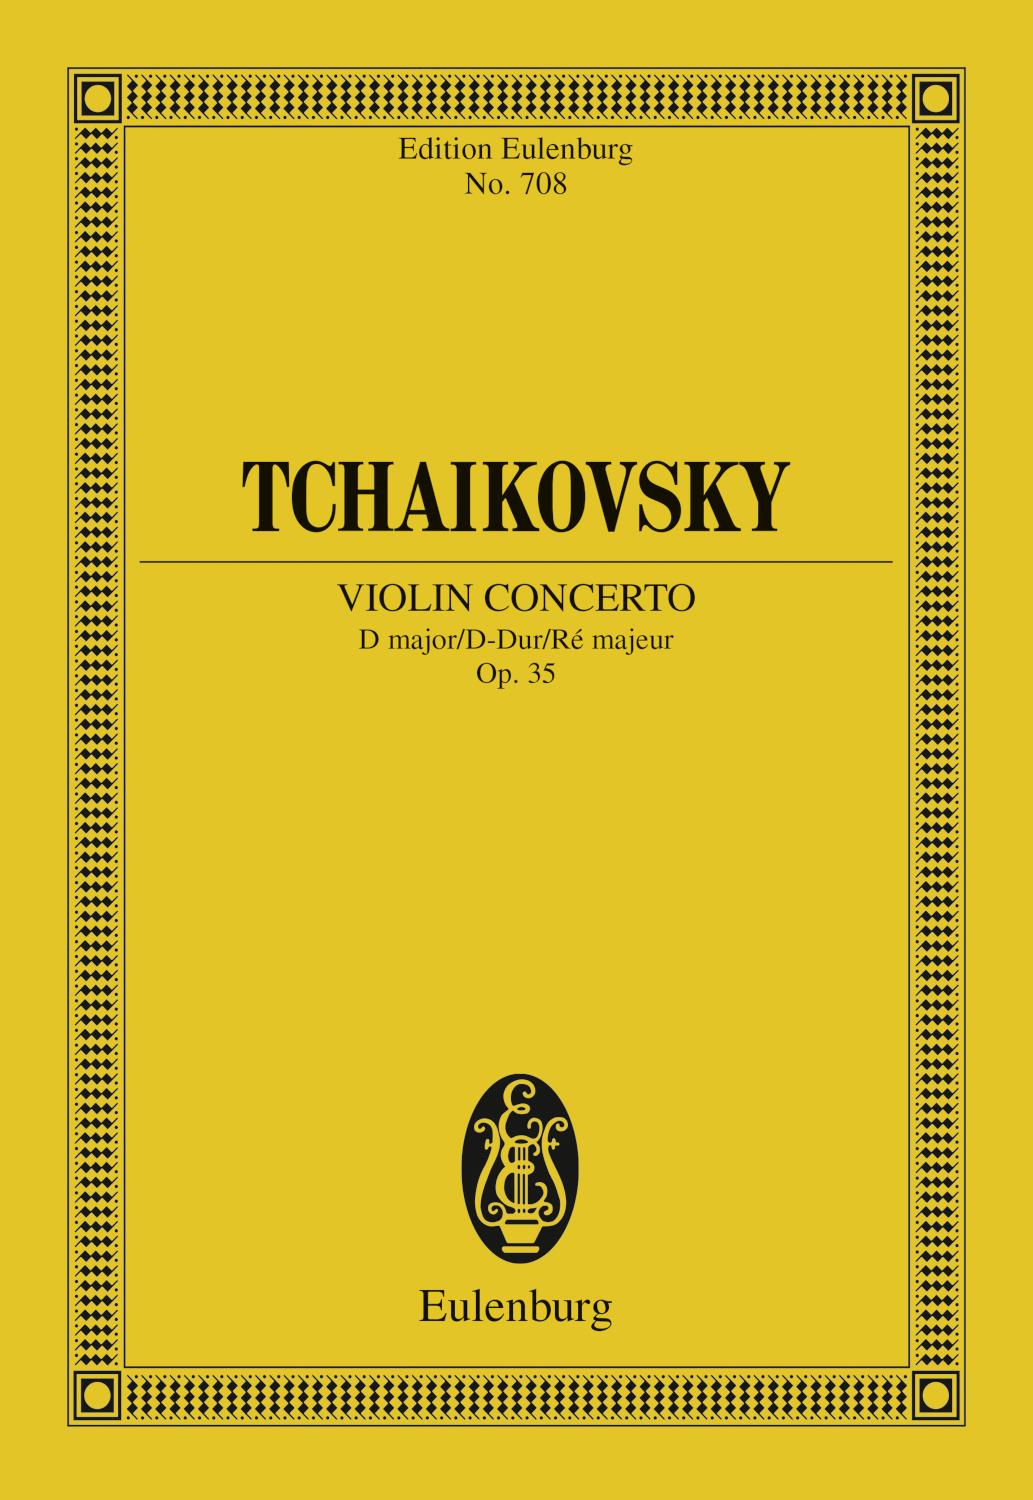 Violin Concerto D major Op. 35